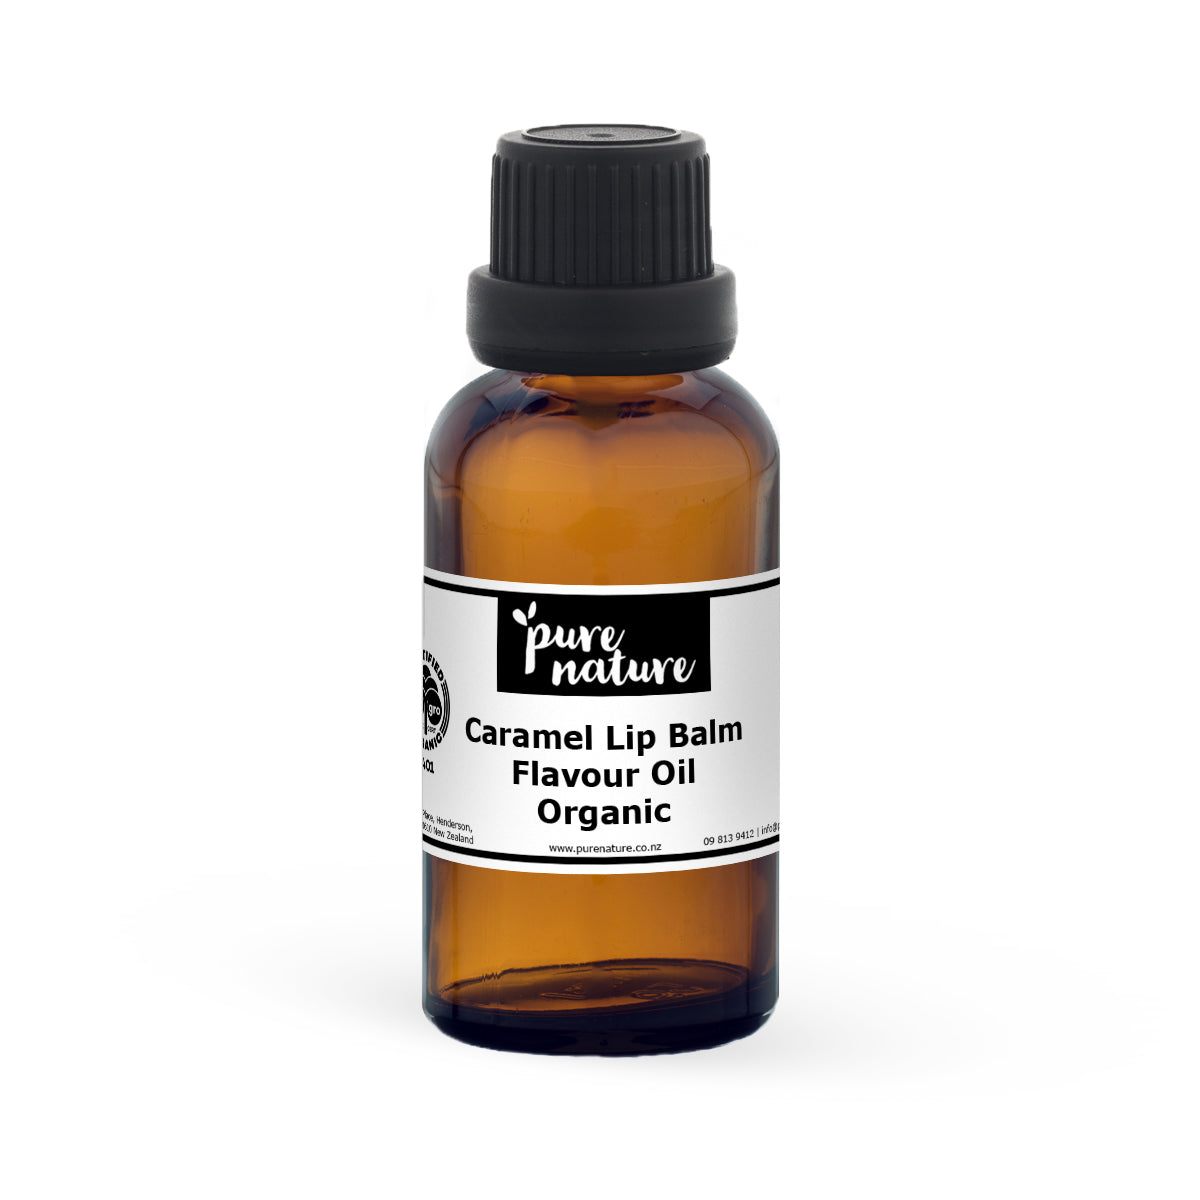 Caramel Lip Balm Flavour Oil - Organic 30ml